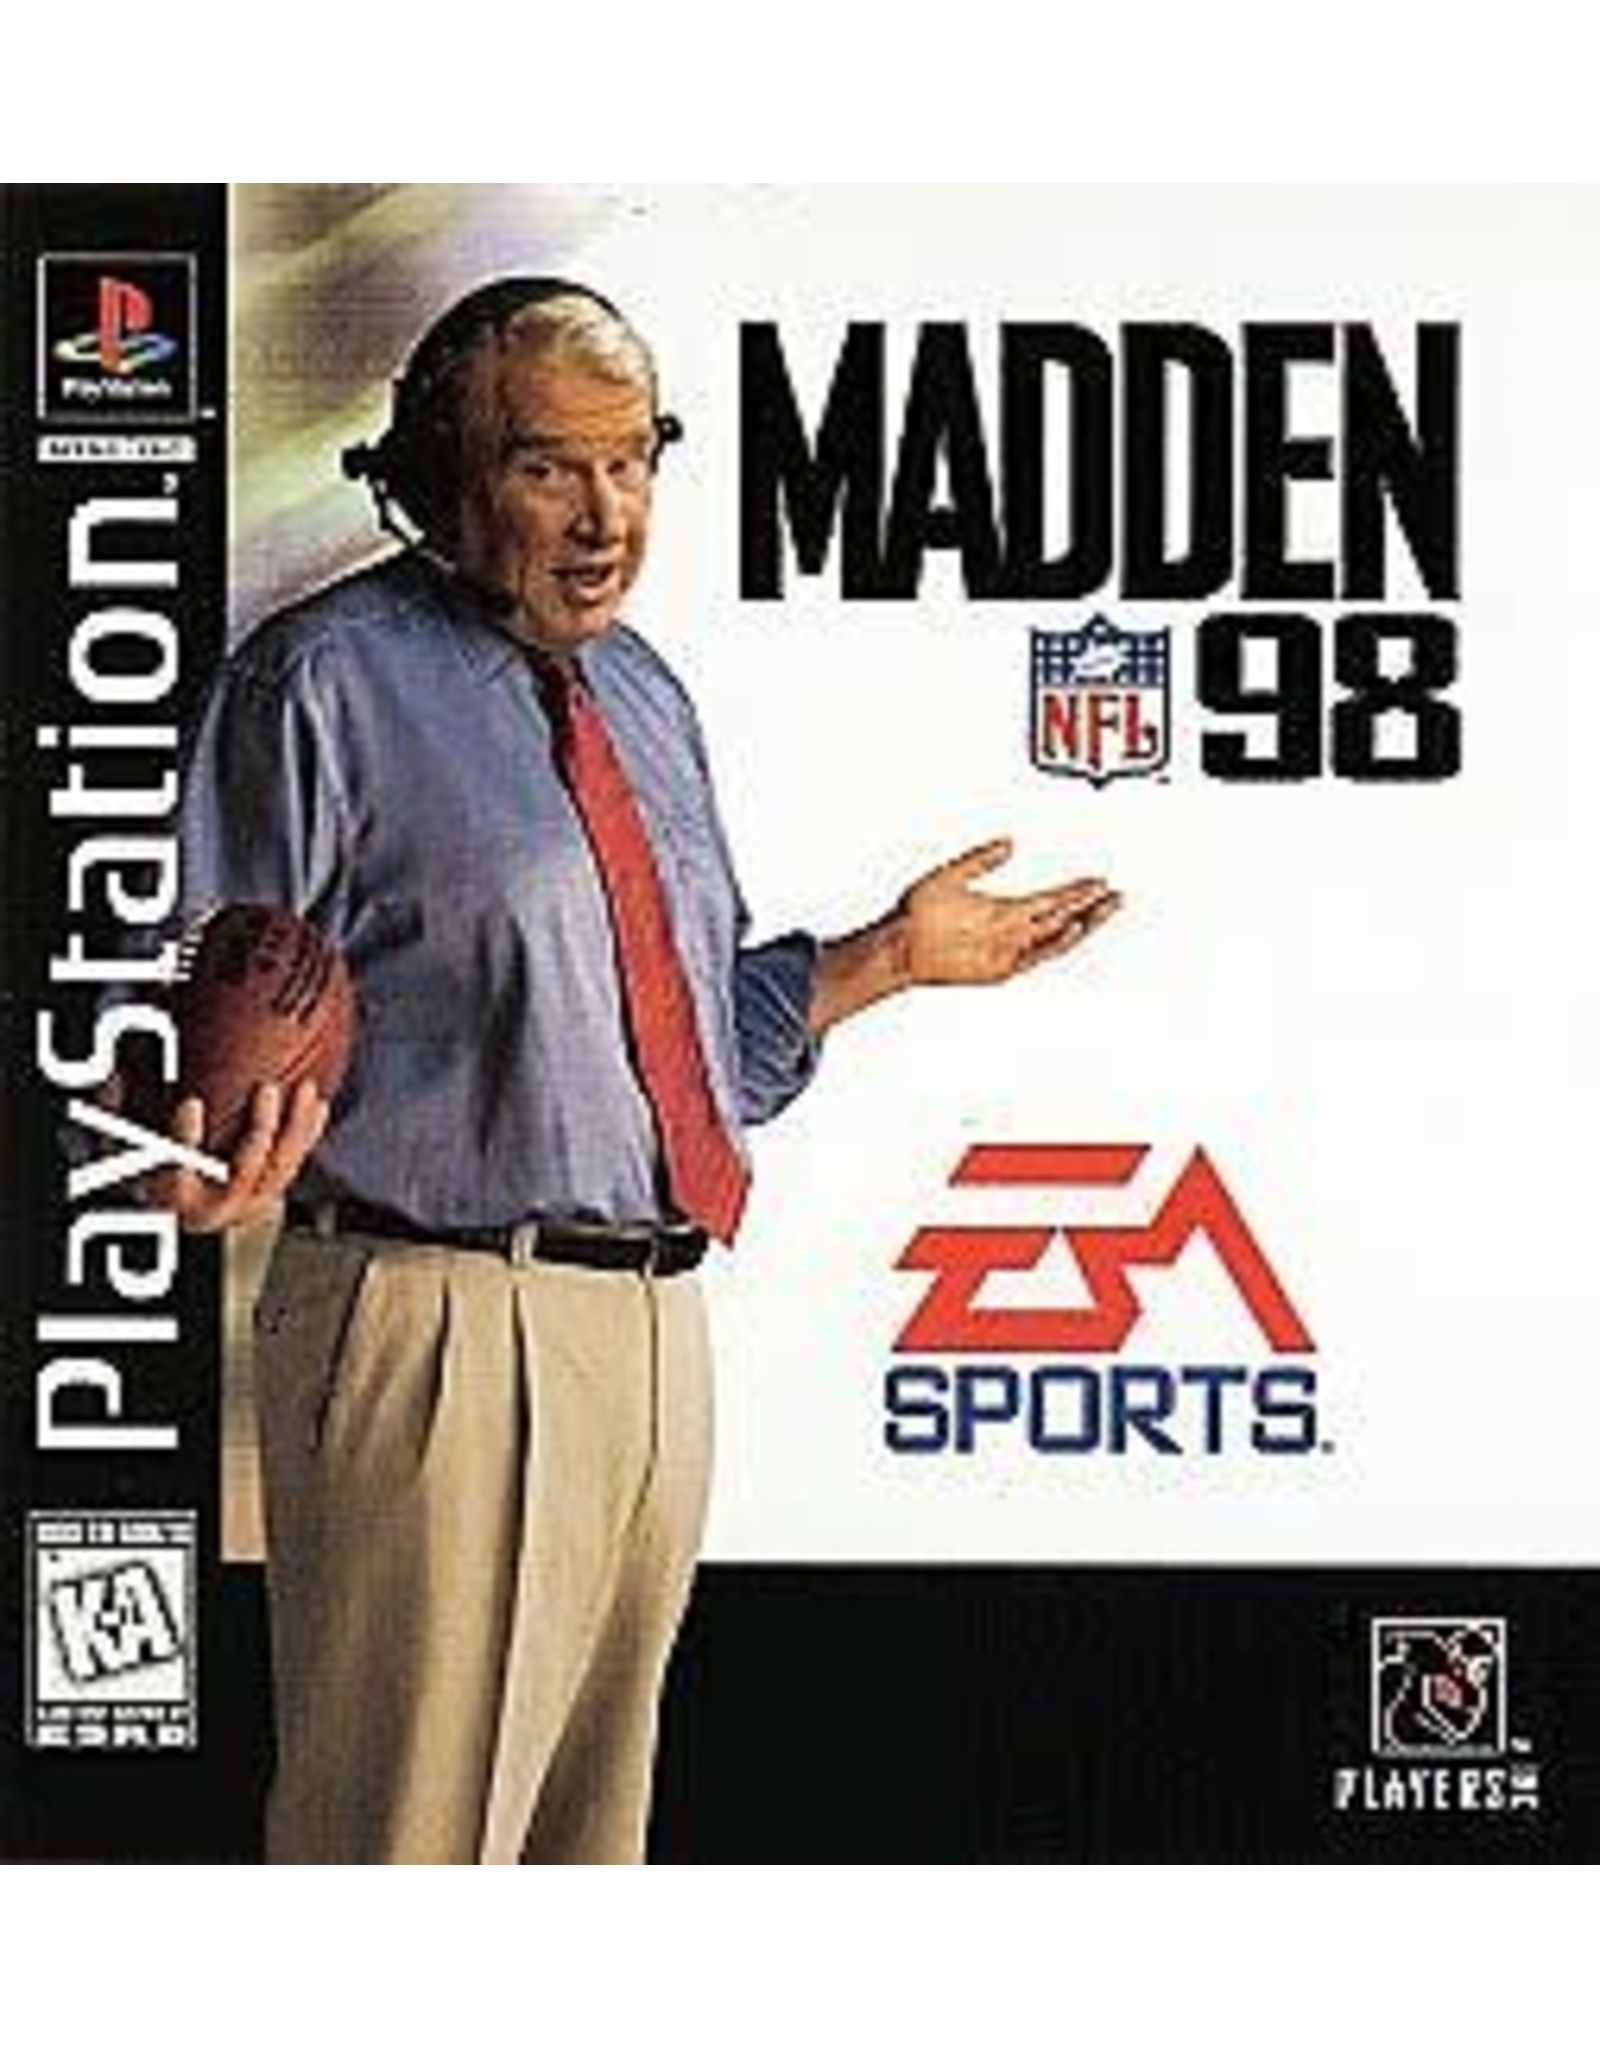 Playstation Madden NFL '98 (No Manual)